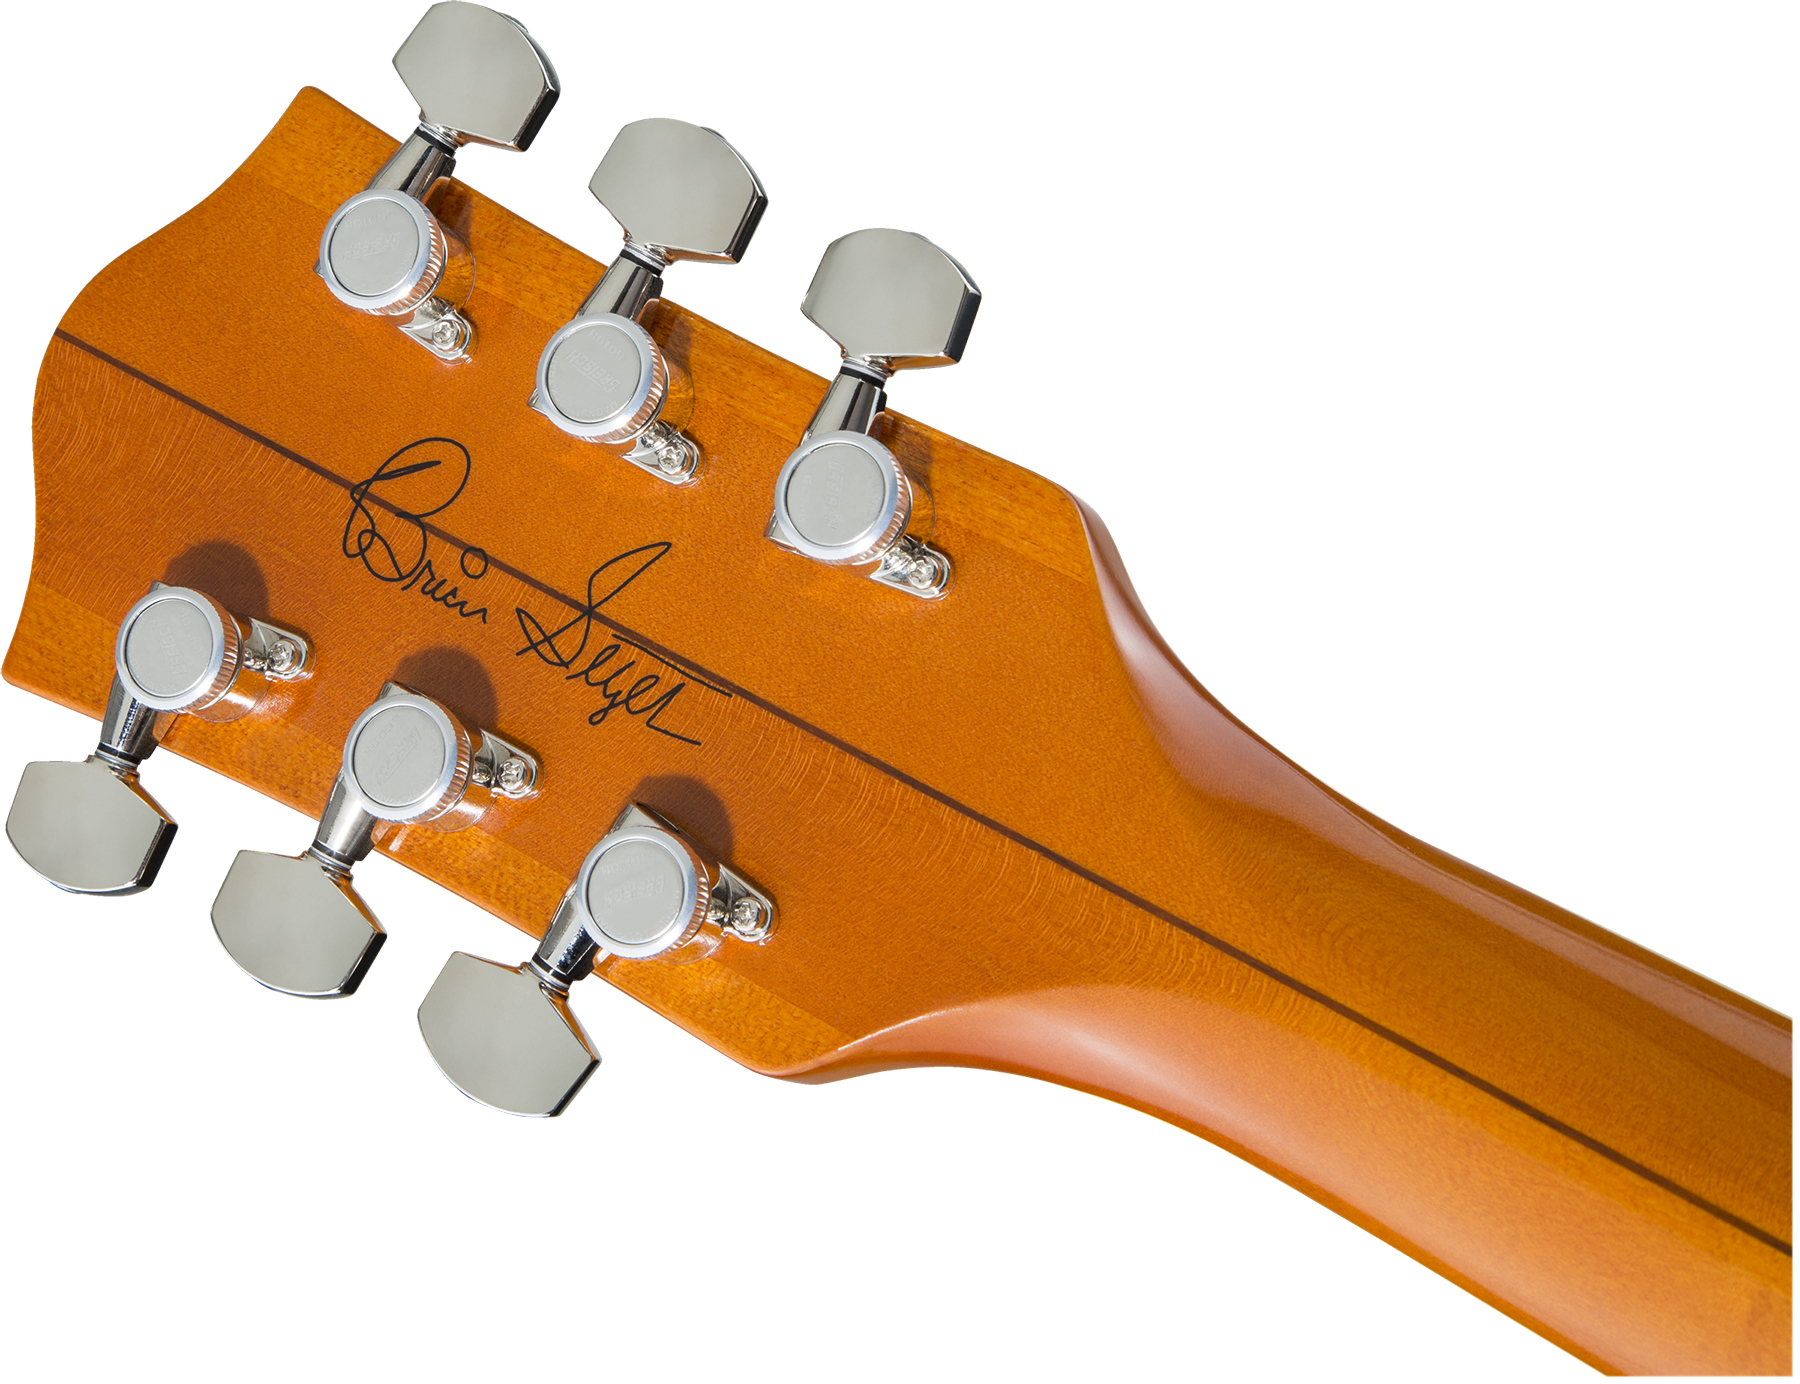 Gretsch Brian Setzer G6120t-bssmk '59 Smoke Nashville Japon Signature Bigsby Eb - Smoke Orange - Semi hollow elektriche gitaar - Variation 3